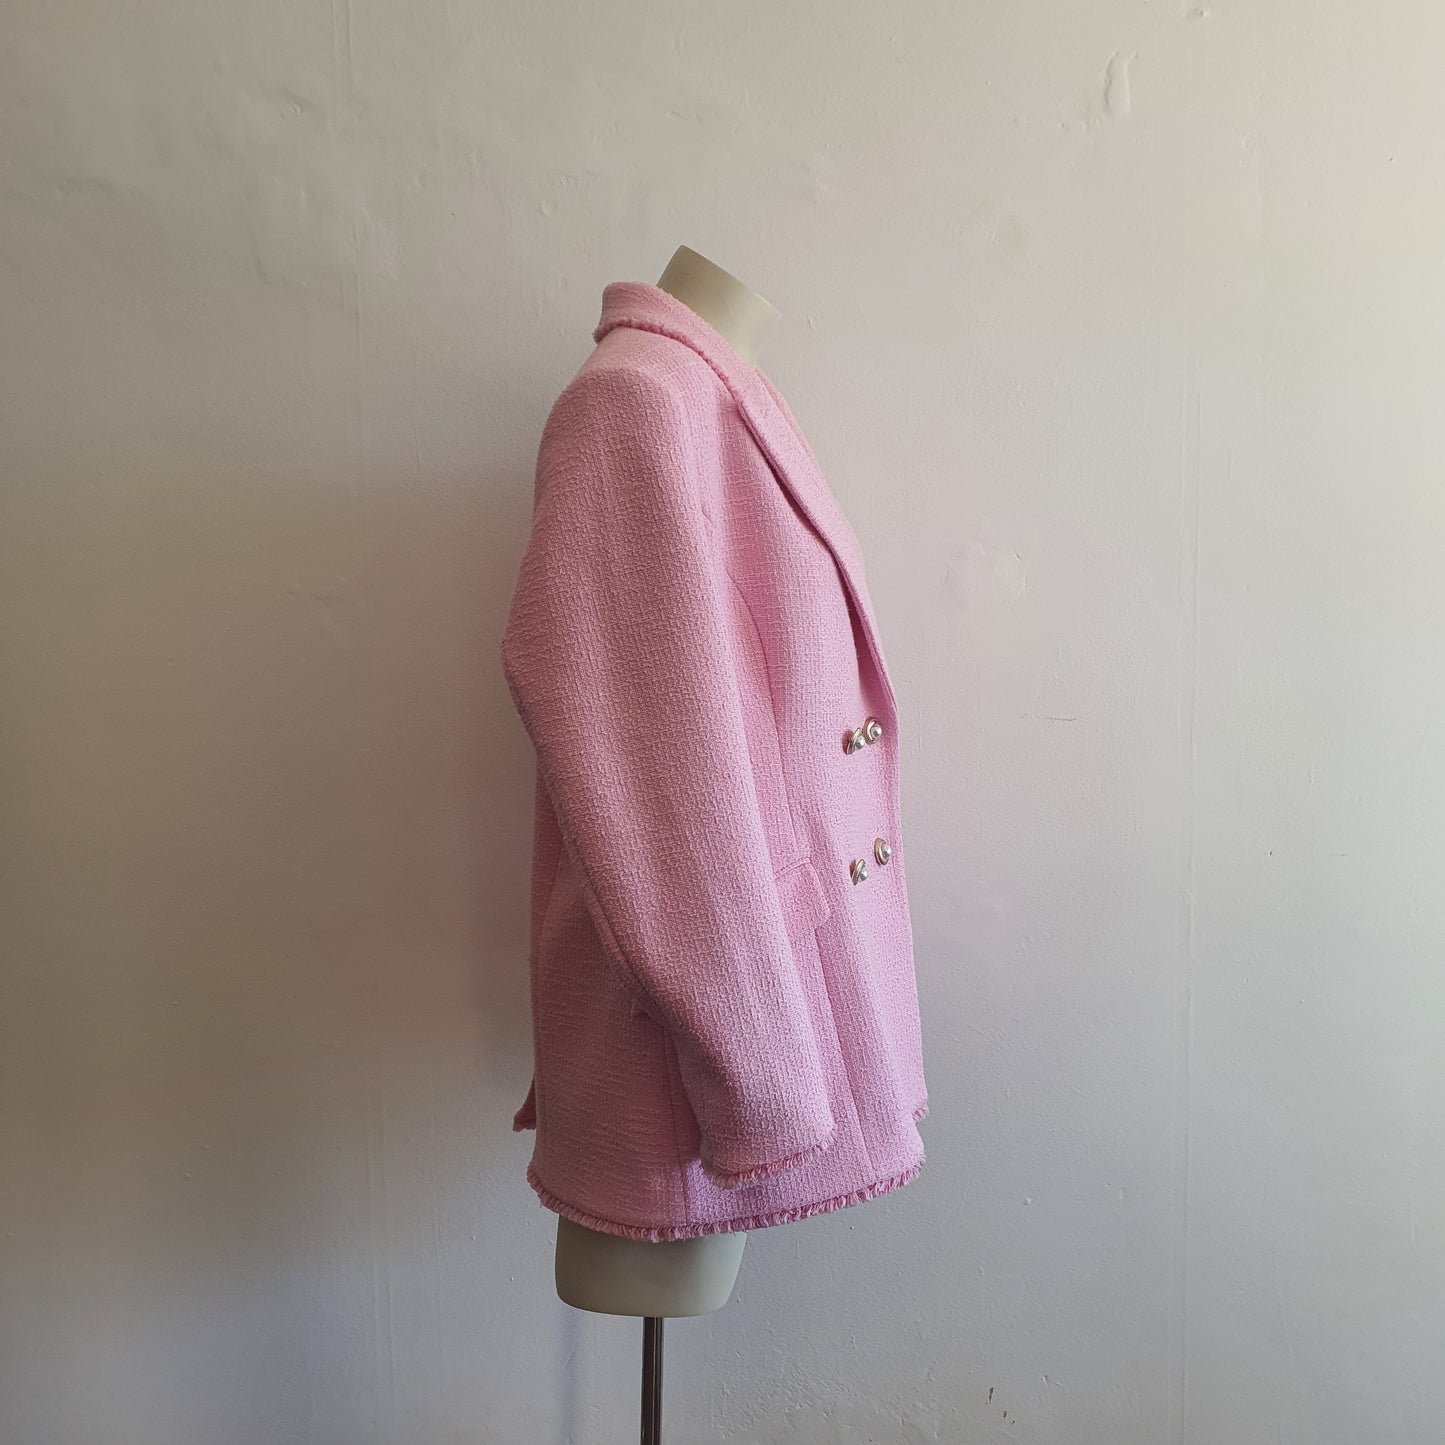 Rebecca Vallance Barbie Pink Tweed Jacket BNWT (16)